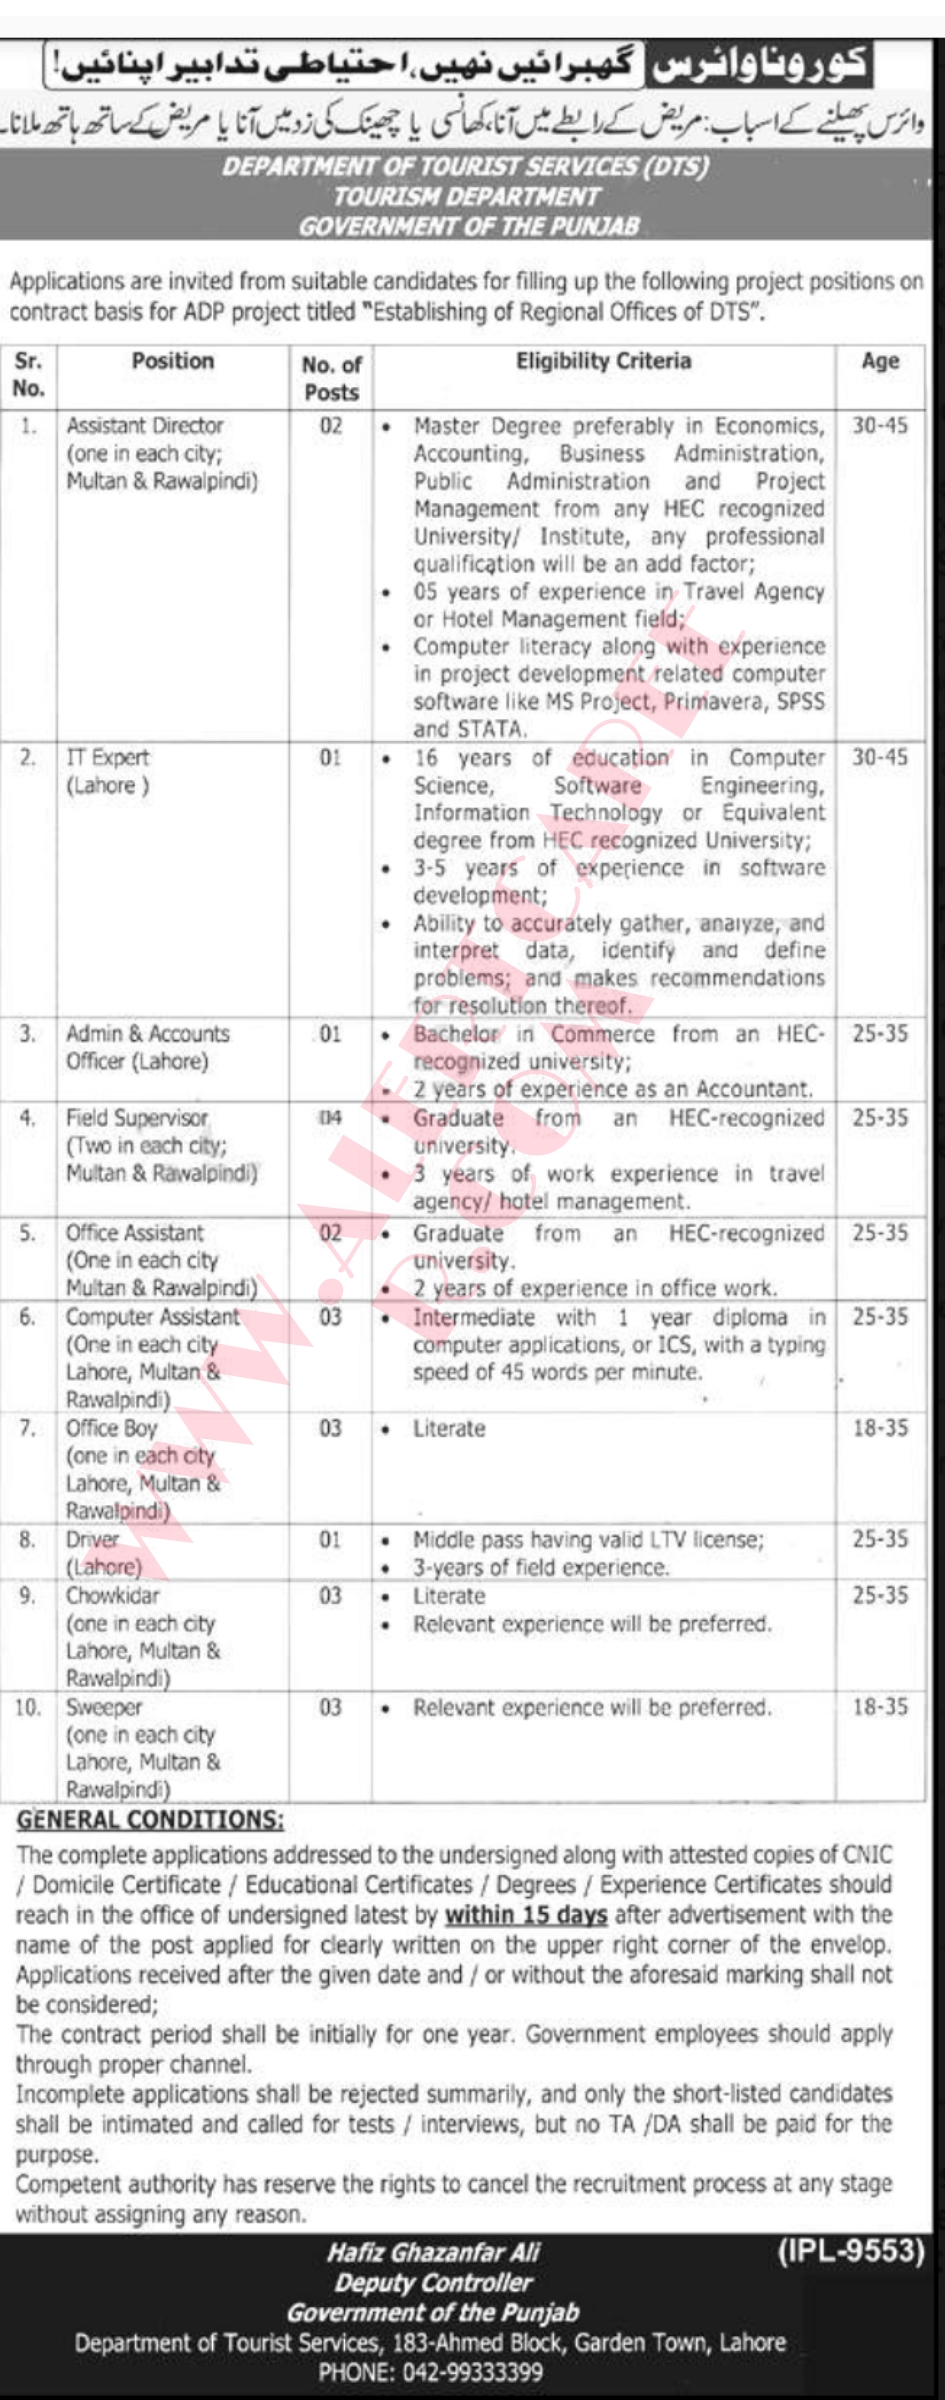 Punjab Tourism Department jobs 2021